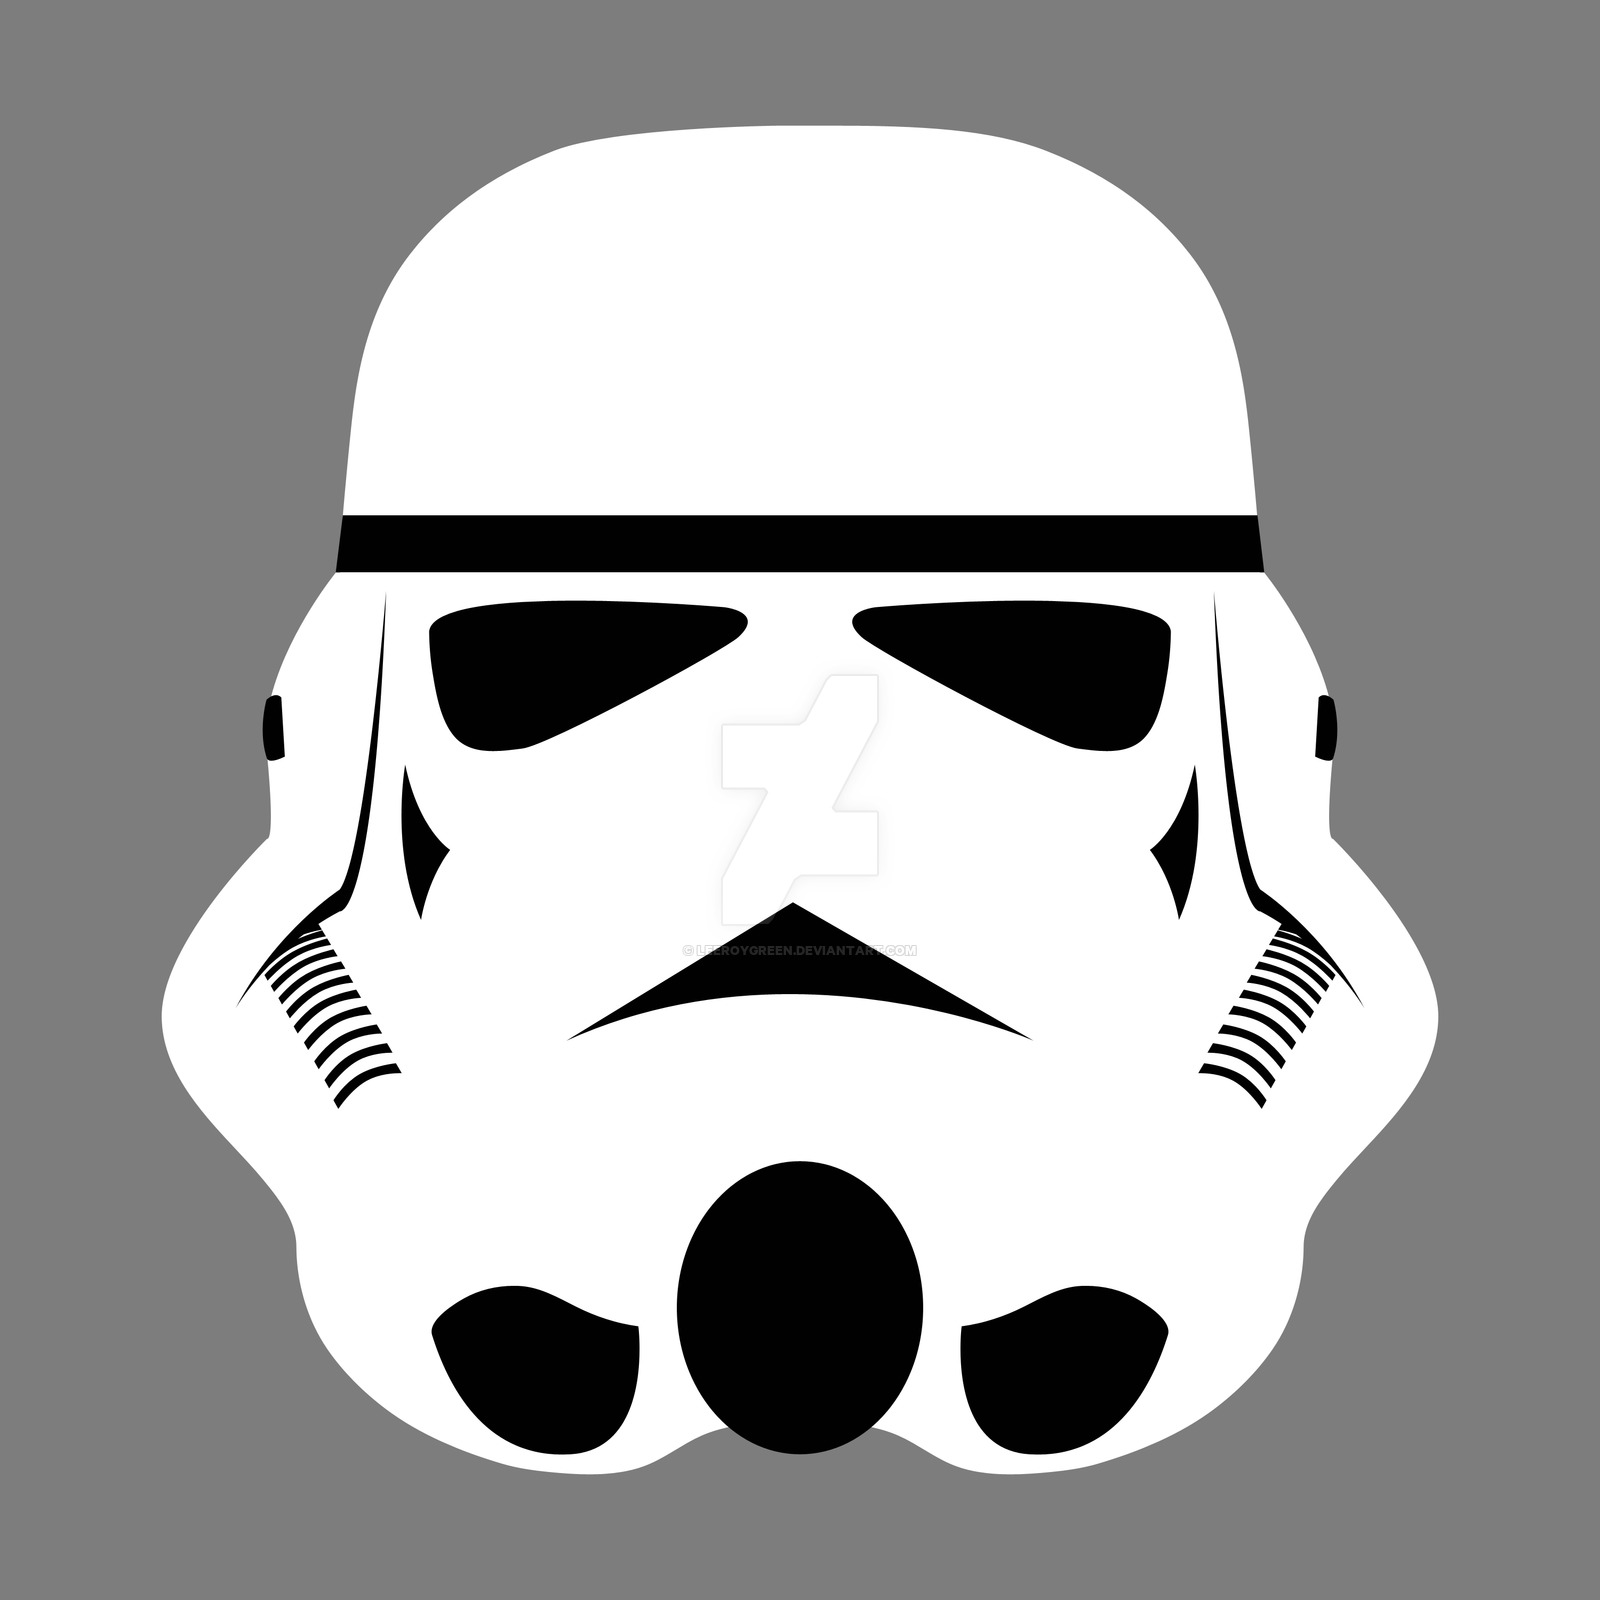 stormtrooper 1 by LeeroyGreen on DeviantArt